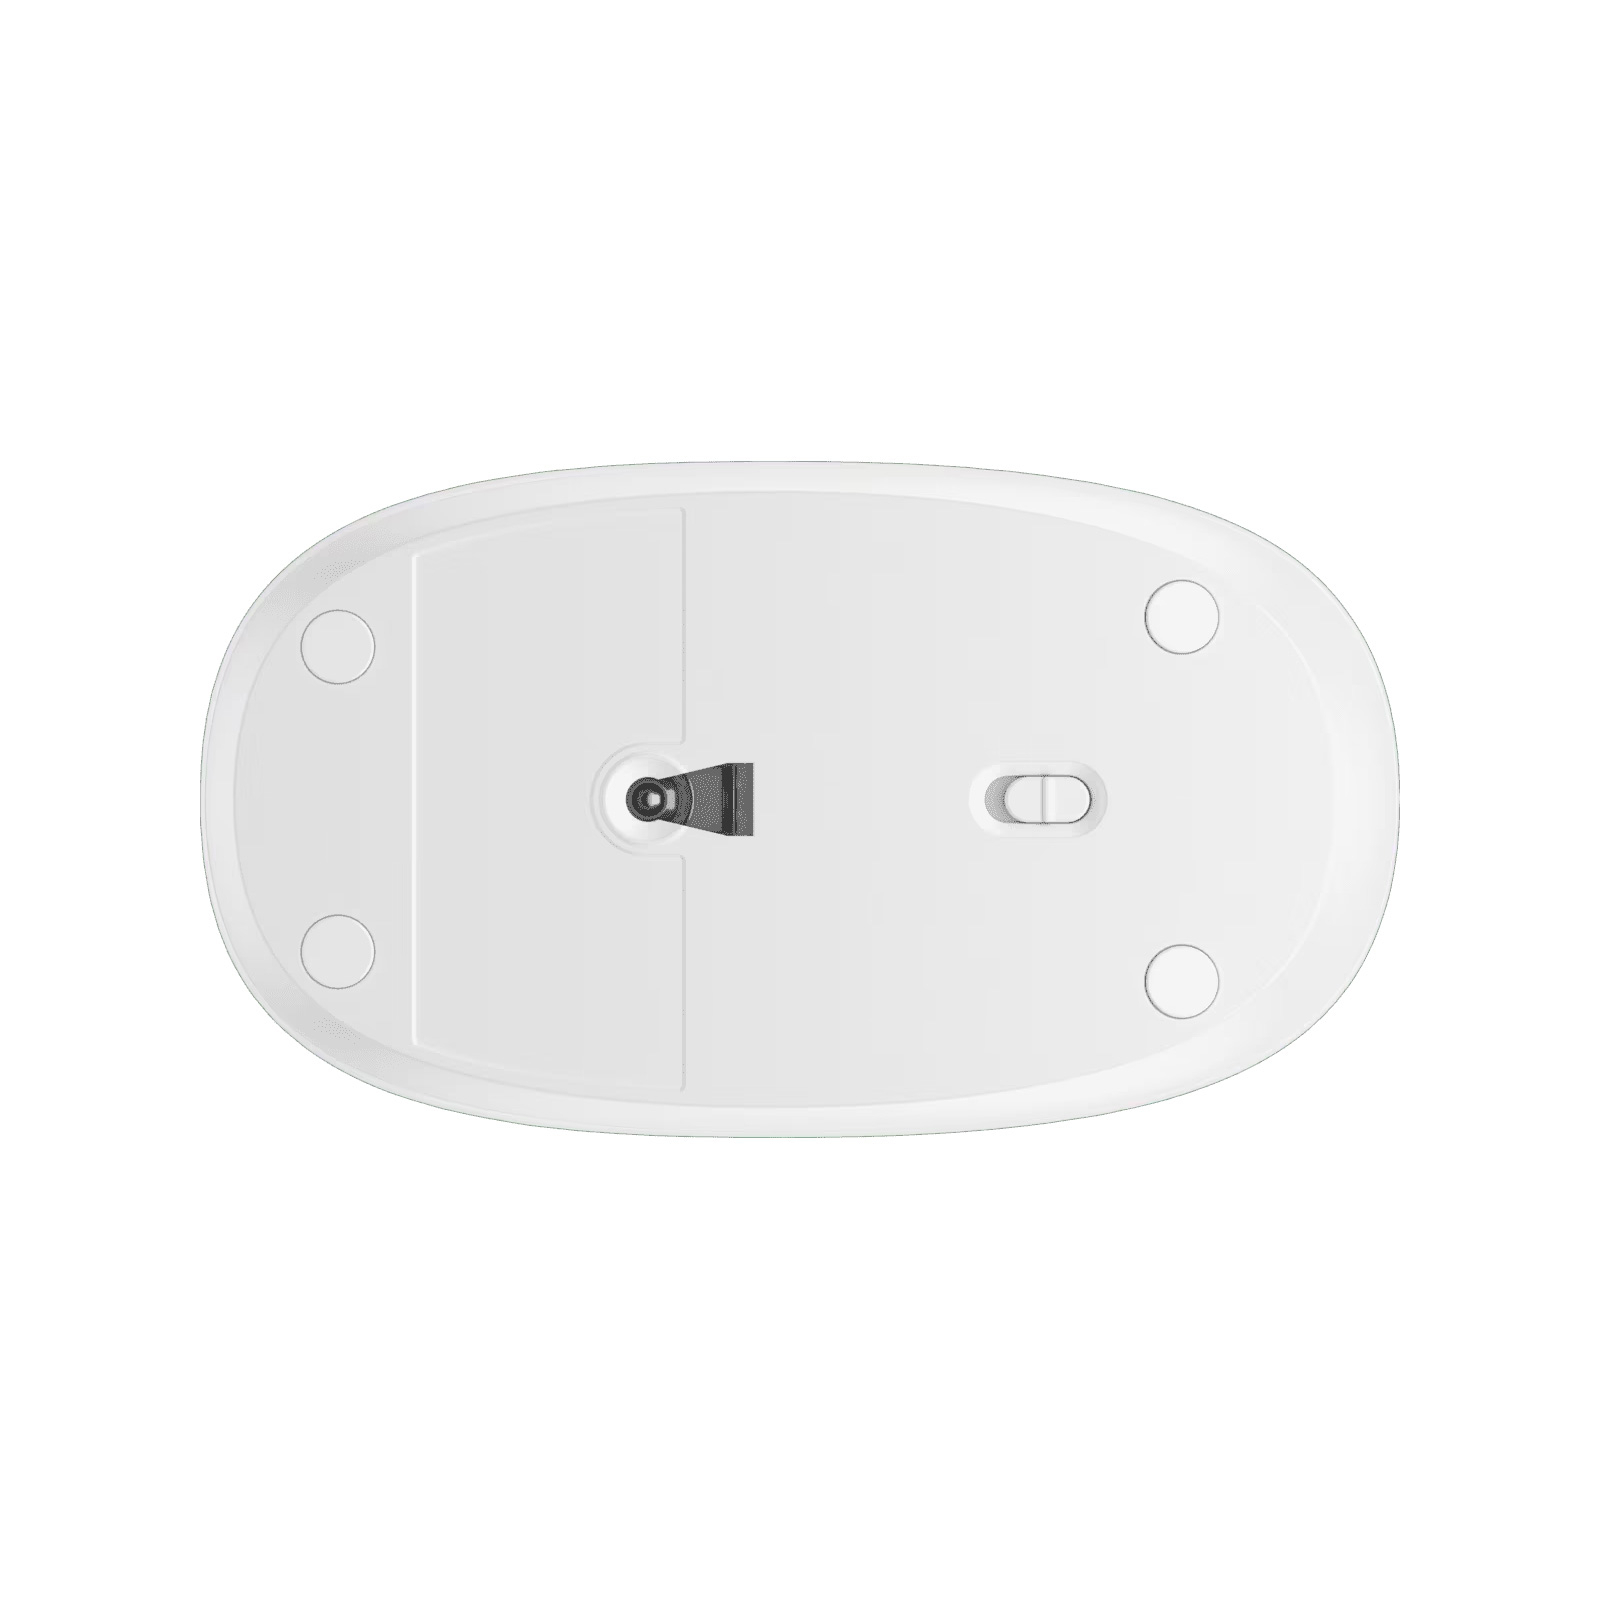 Мишка HP 240 Bluetooth Red (43N05AA) зображення 6